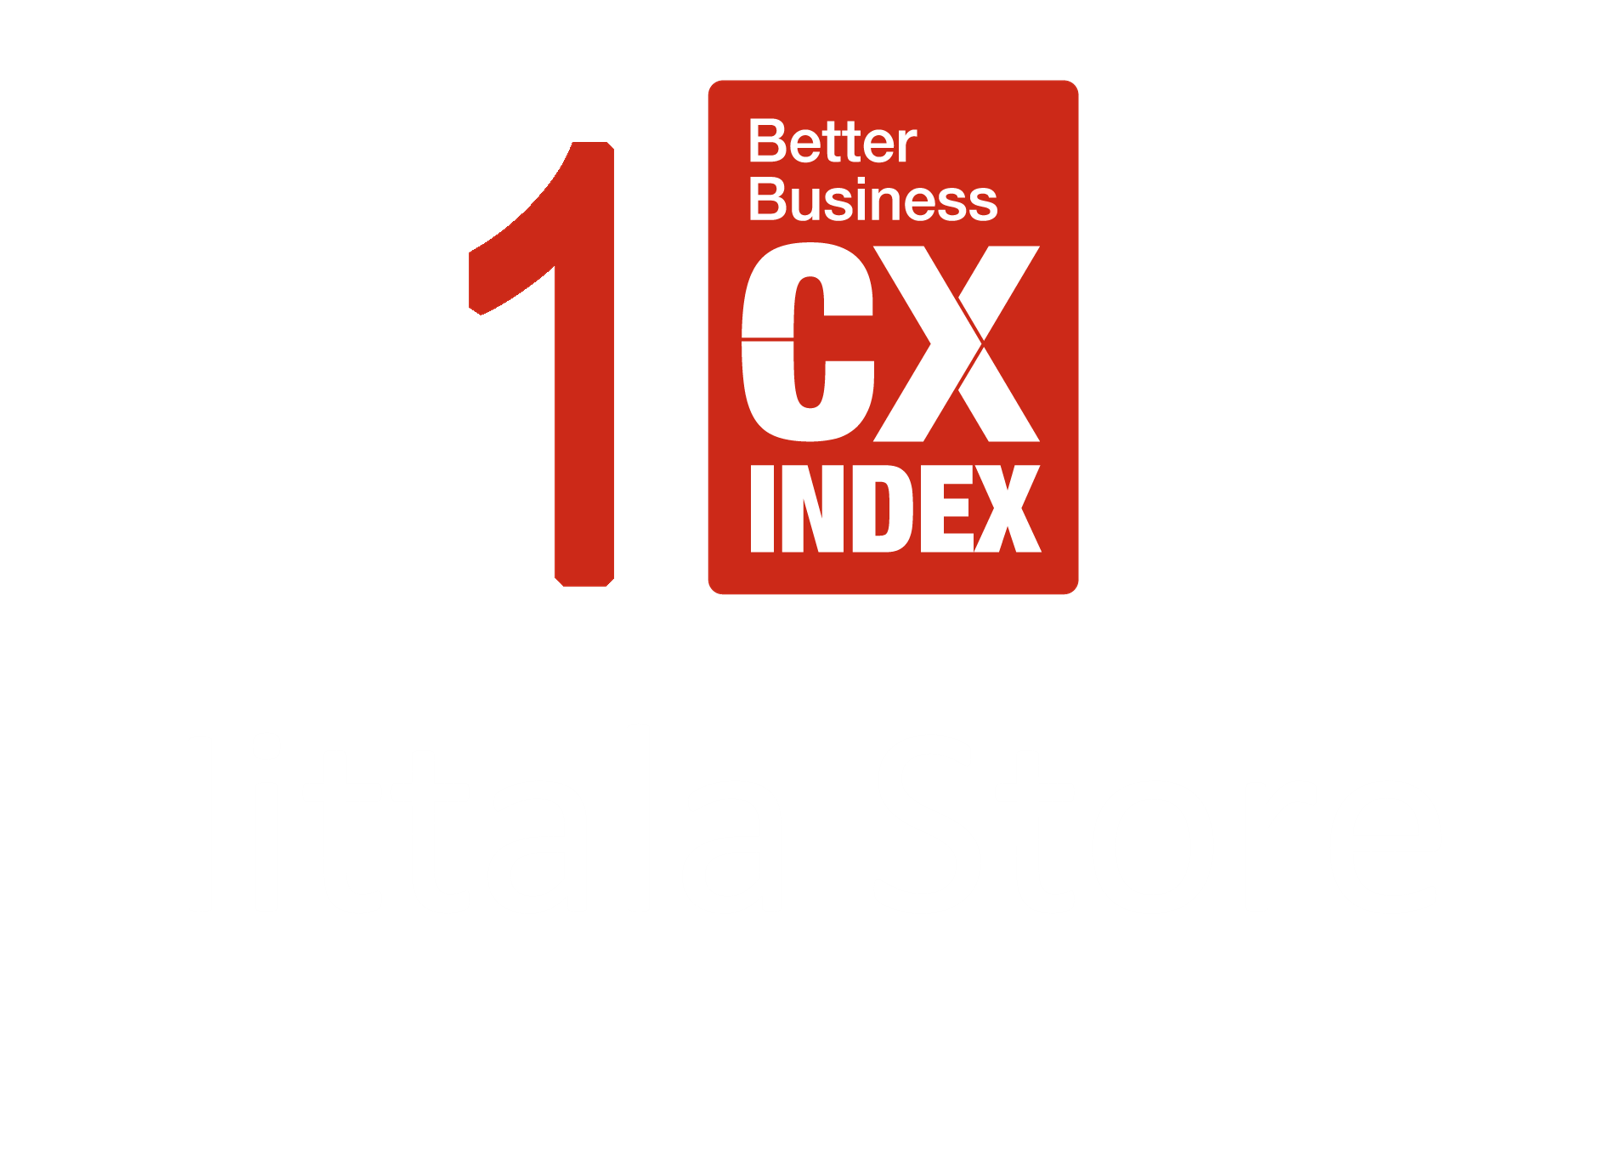 1 CX Index